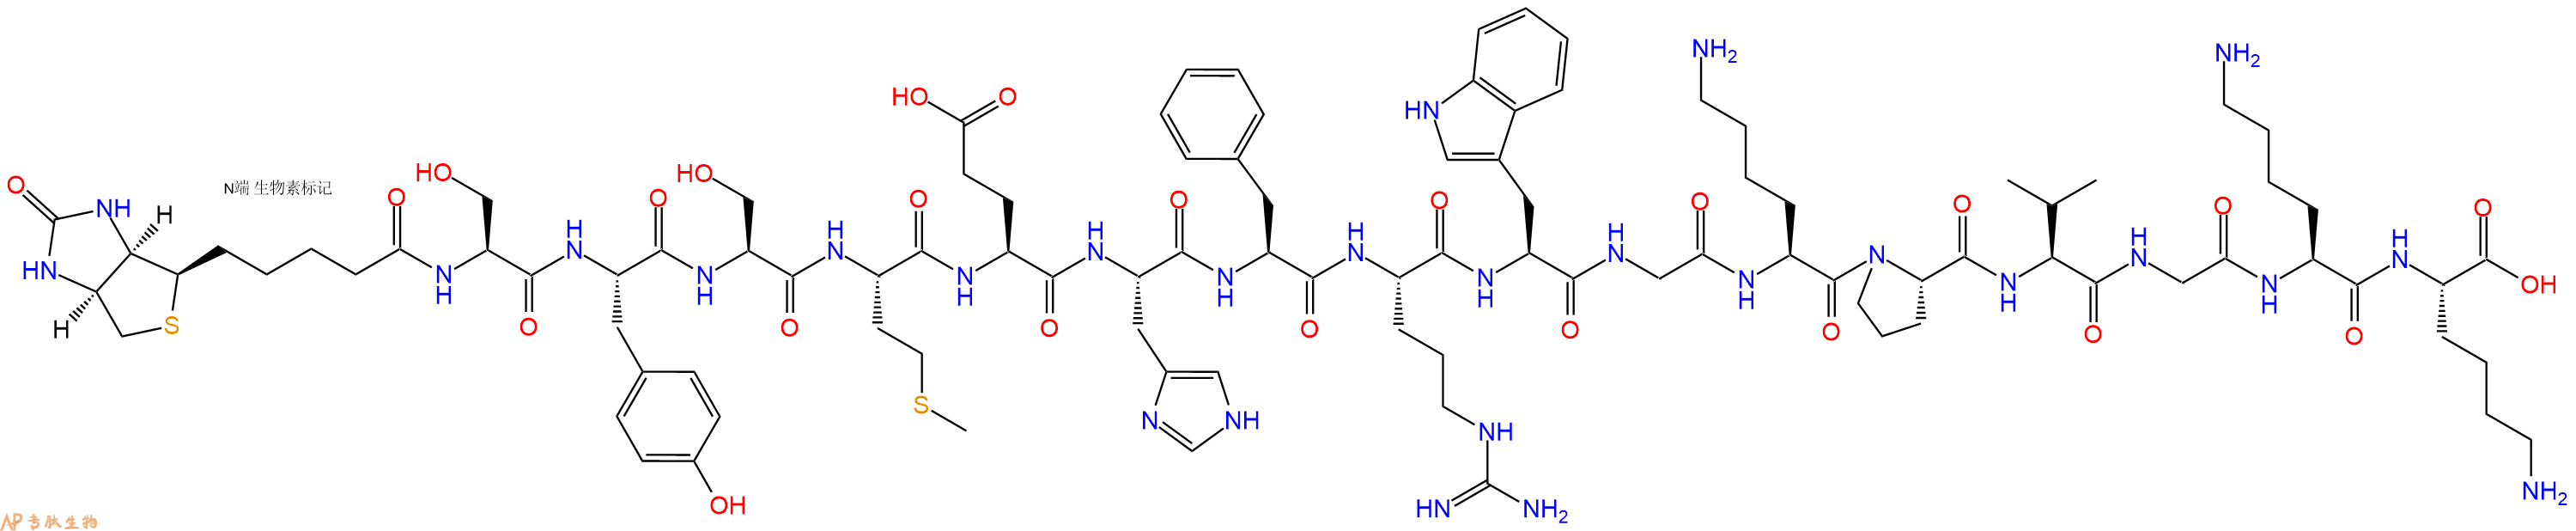 专肽生物产品Biotin-Ser-Tyr-Ser-Met-Glu-His-Phe-Arg-Trp-Gly-Lys